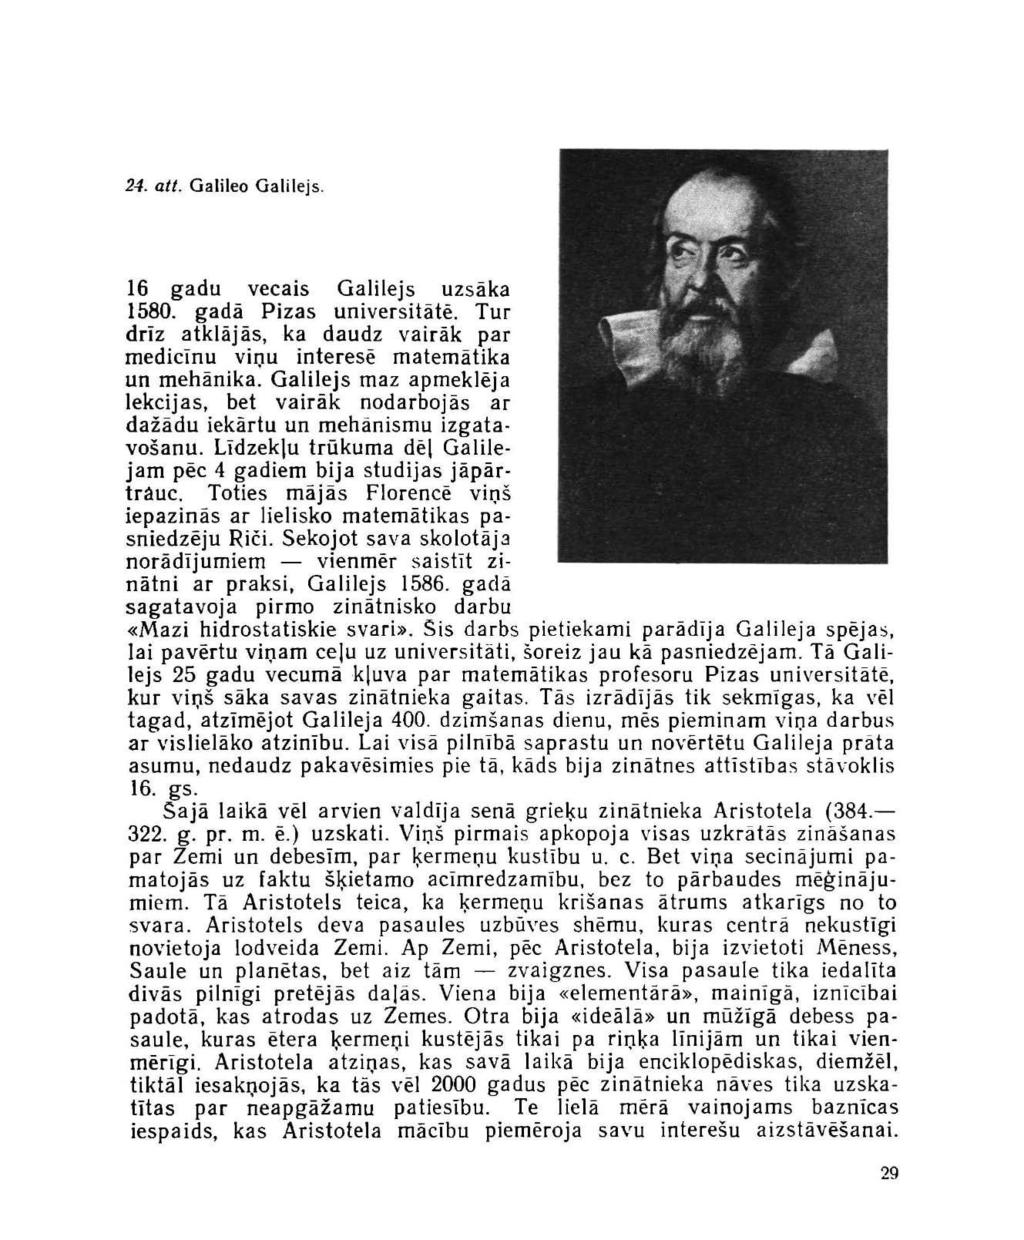 24. att. Galileo Galilejs. 16 gadu vecais Galilejs uzsāka 1580. gadā Pizas universitātē. Tur drīz atklājās, ka daudz vairāk par medicīnu viņu interesē matemātika un mehānika.